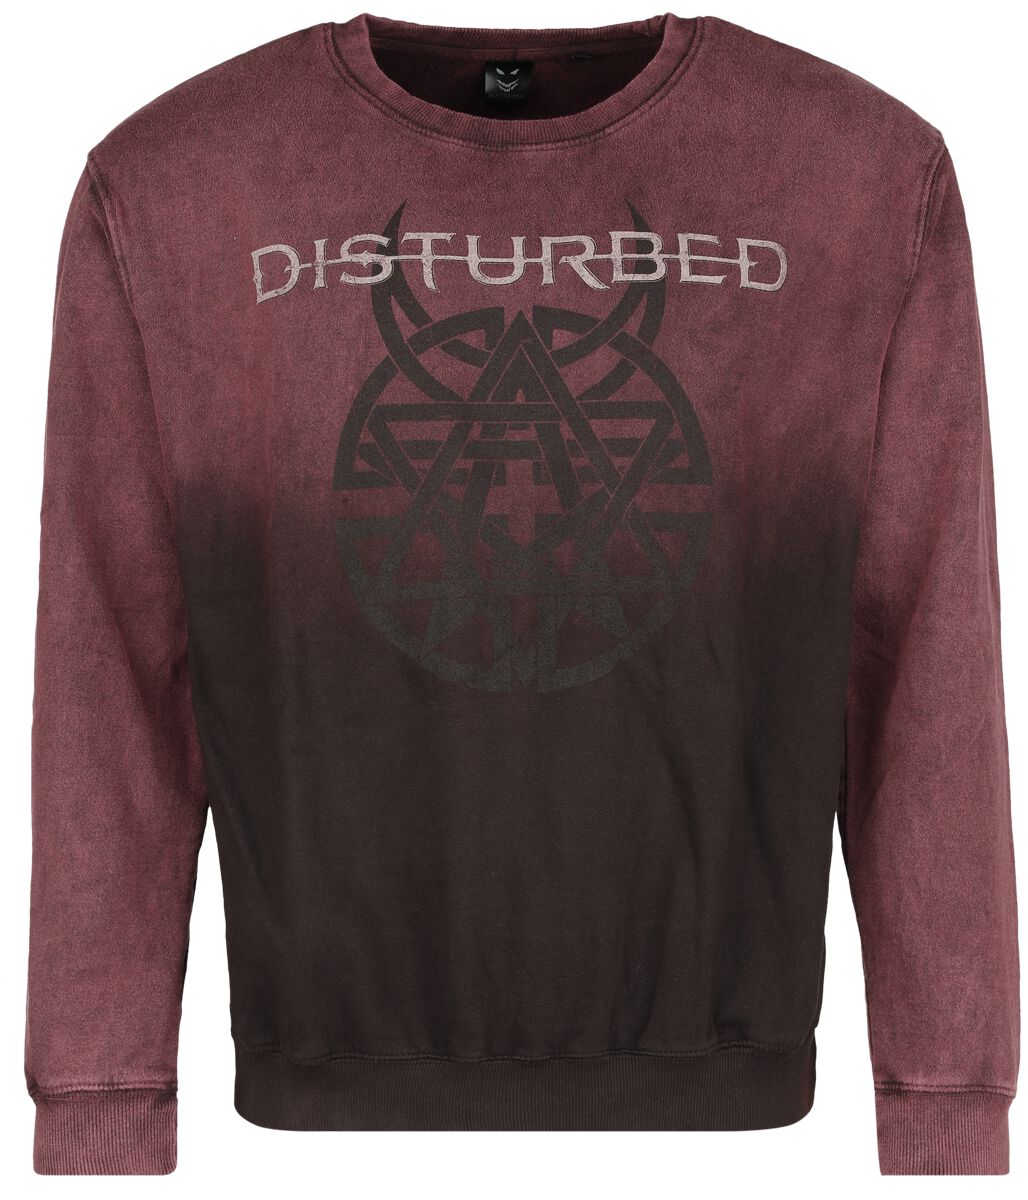 Disturbed Sweatshirt - Believe Symbol - S bis XXL - für Männer - Größe XL - dunkelrot  - Lizenziertes Merchandise!